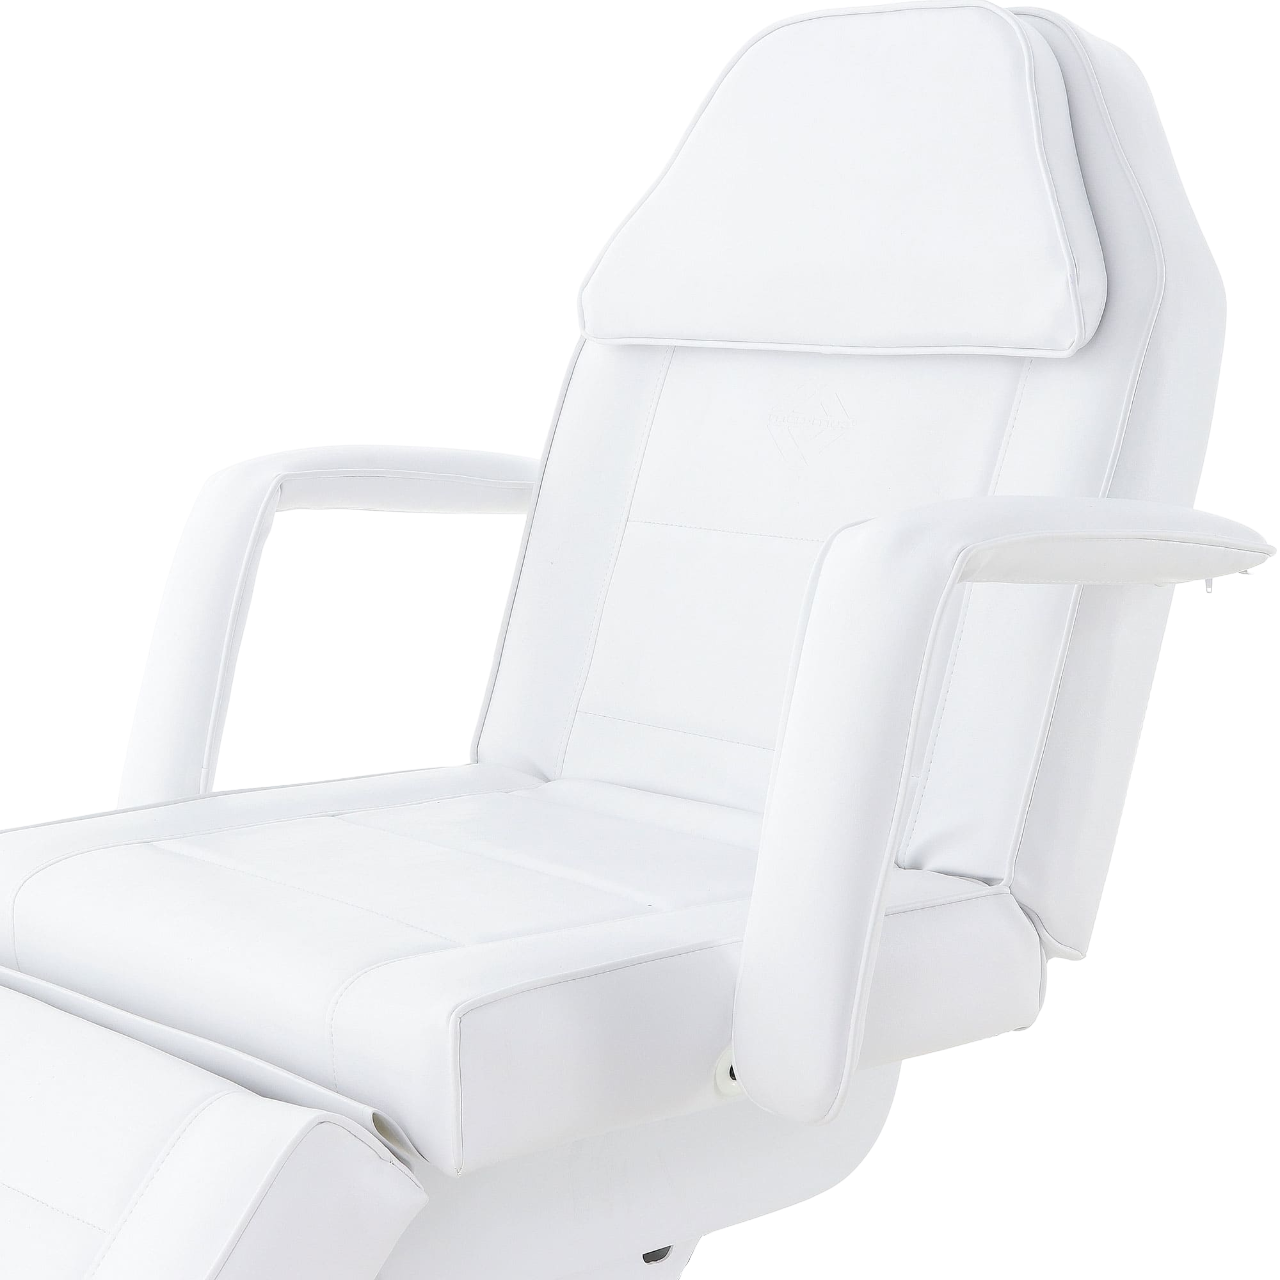 Электрическое косметологическое кресло ММКК-3 КО-172Д MedMos - подлокотники